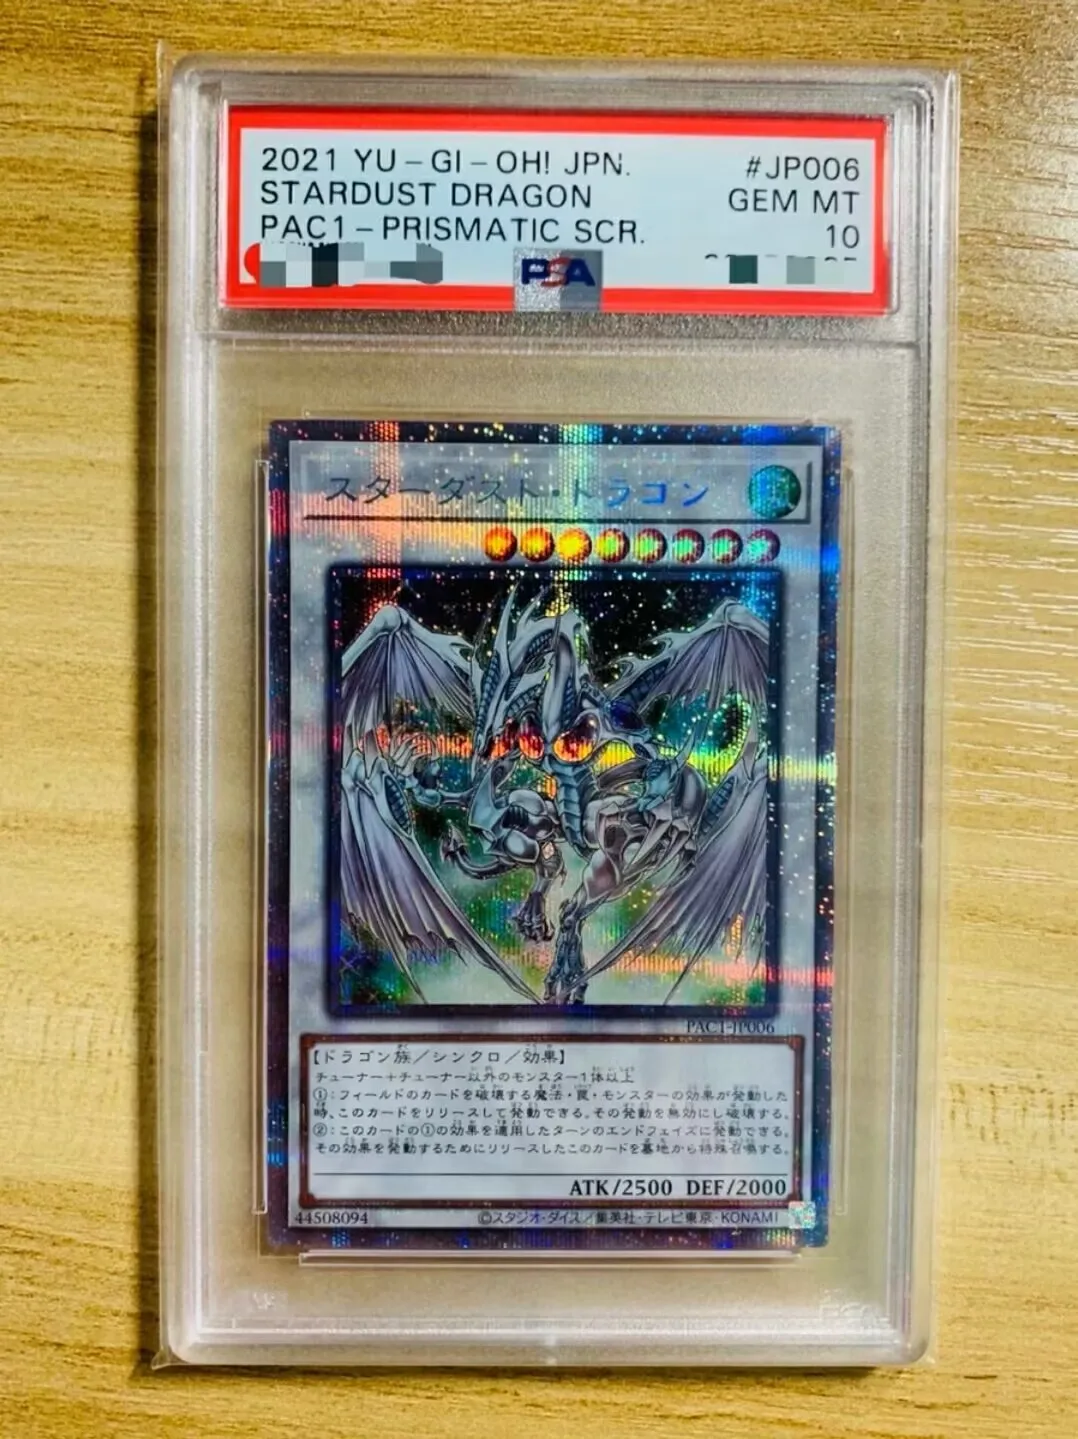 

PSA10 Stardust Dragon - Prismatic Secret Rare PAC1-JP006 - YuGiOh Japanese GEM Mint Card